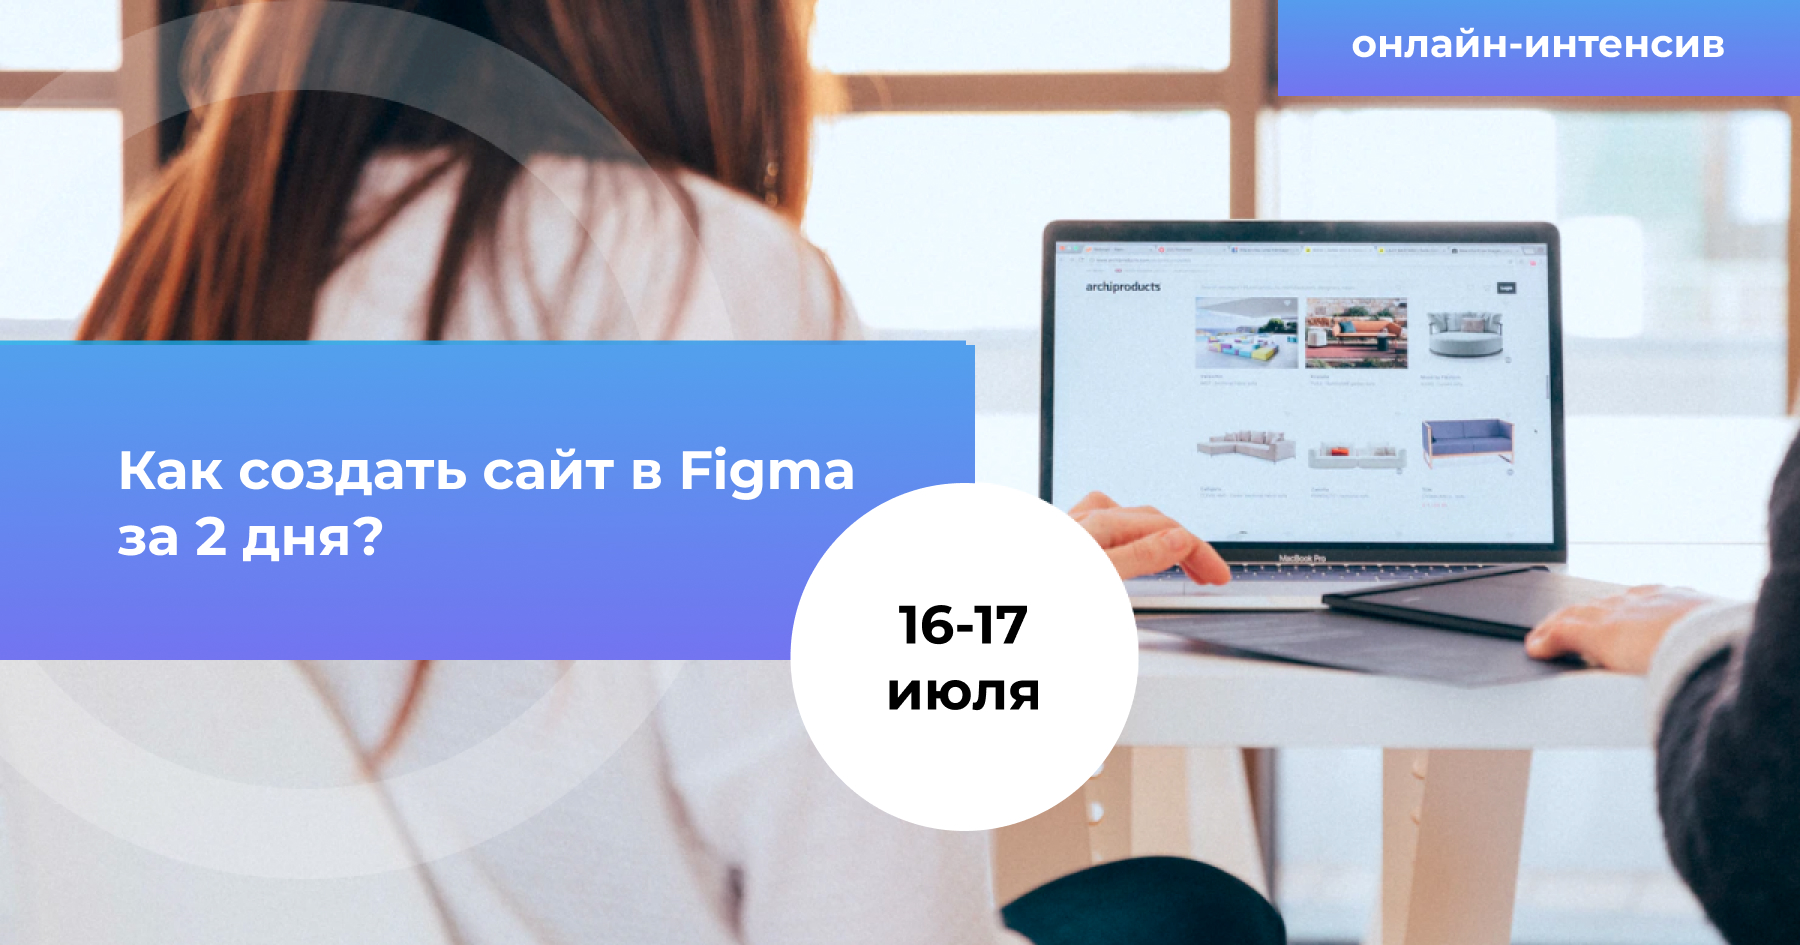 Как создать сайт в Figma за 2 дня?